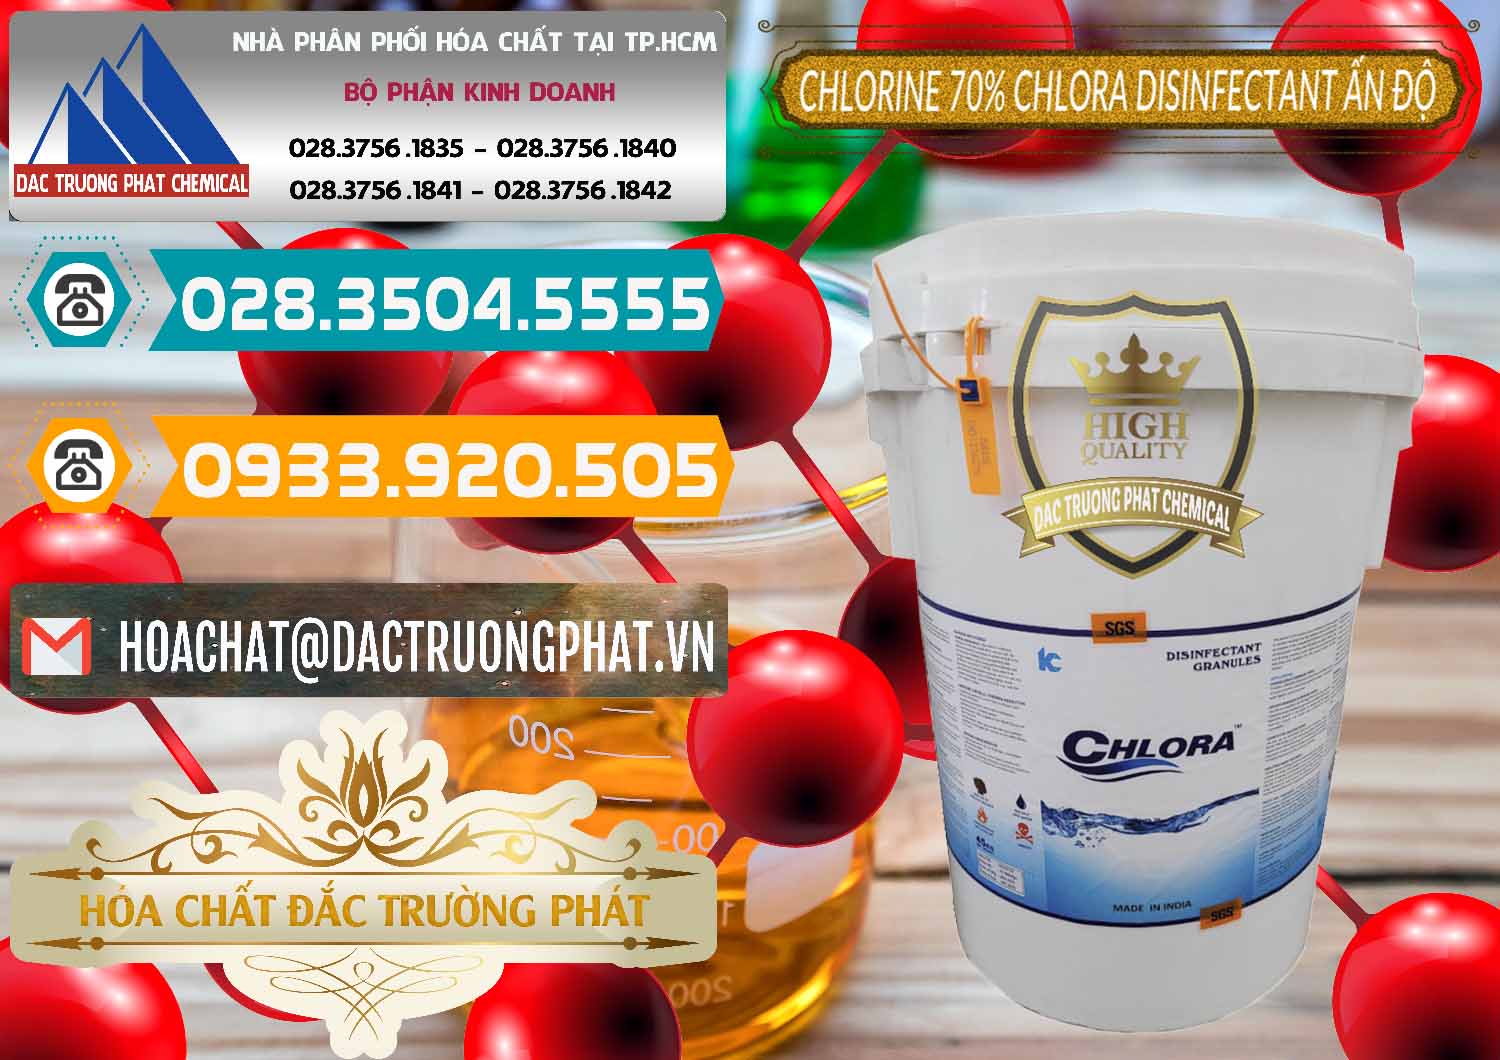 Công ty chuyên cung cấp ( bán ) Chlorine – Clorin 70% Chlora Disinfectant Ấn Độ India - 0213 - Chuyên kinh doanh - phân phối hóa chất tại TP.HCM - congtyhoachat.vn